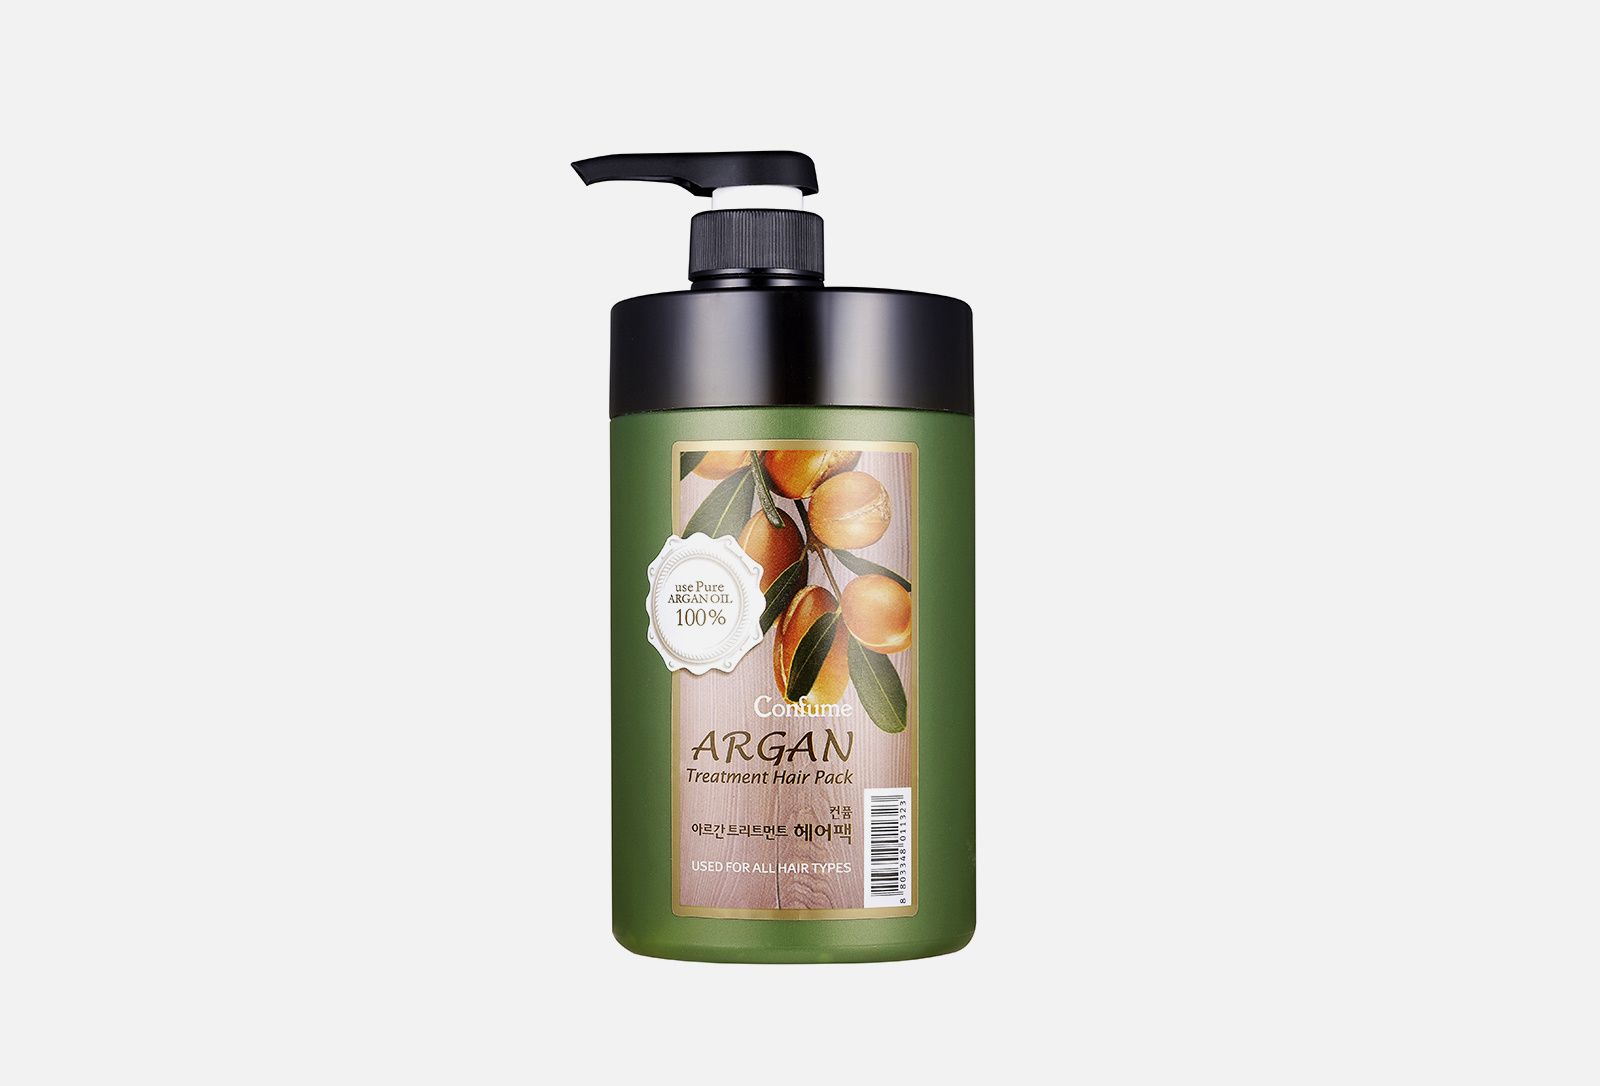 Confume argan кондиционер для волос с аргановым маслом